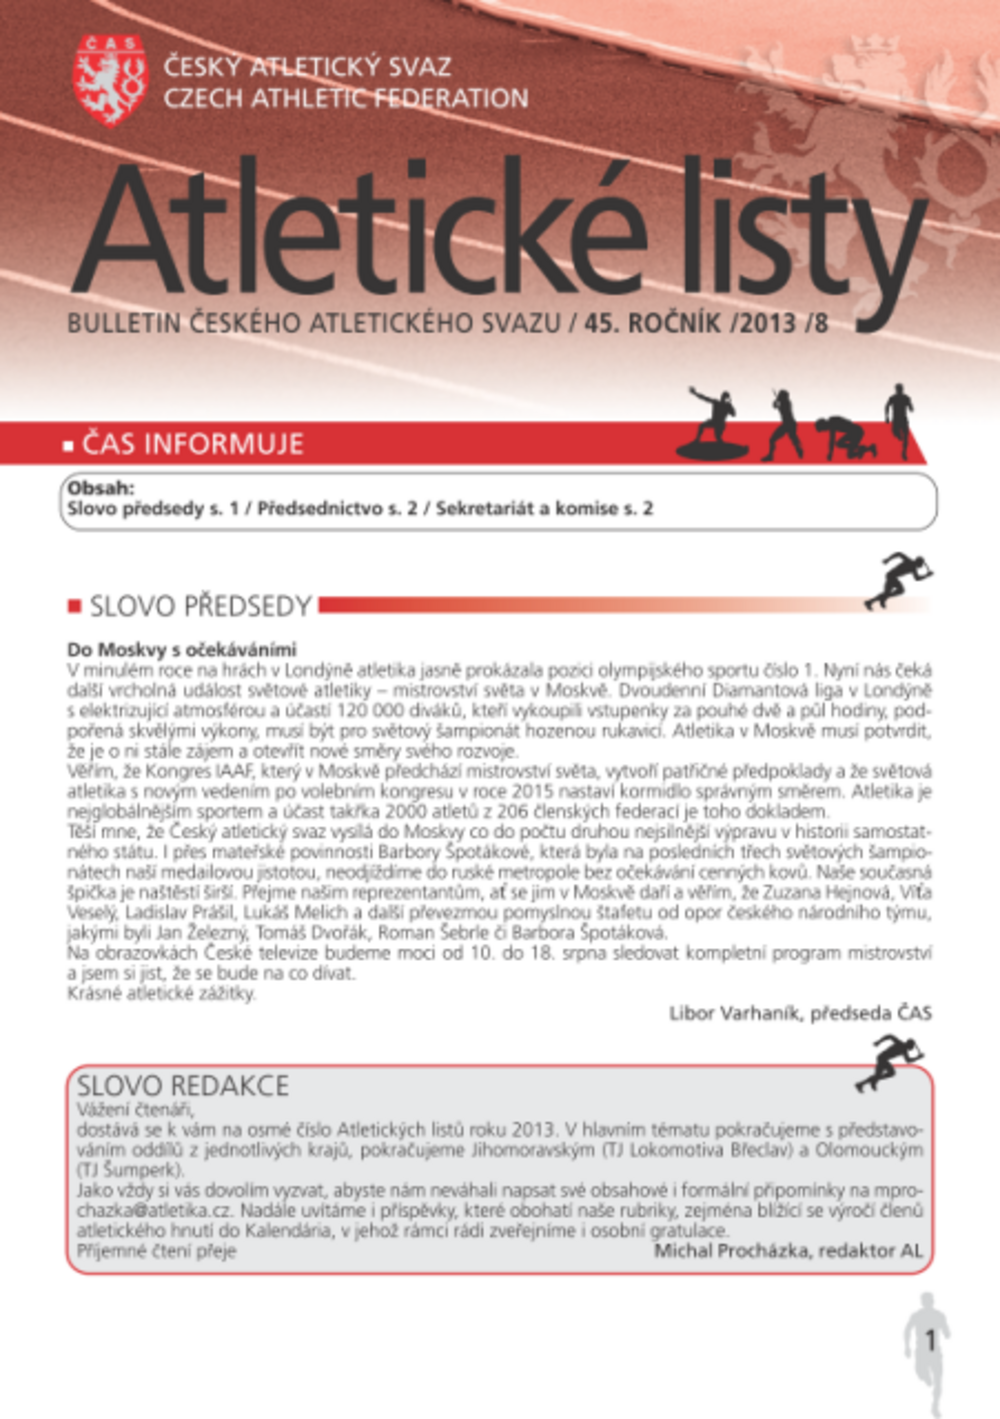 Atletické listy, srpen 2013